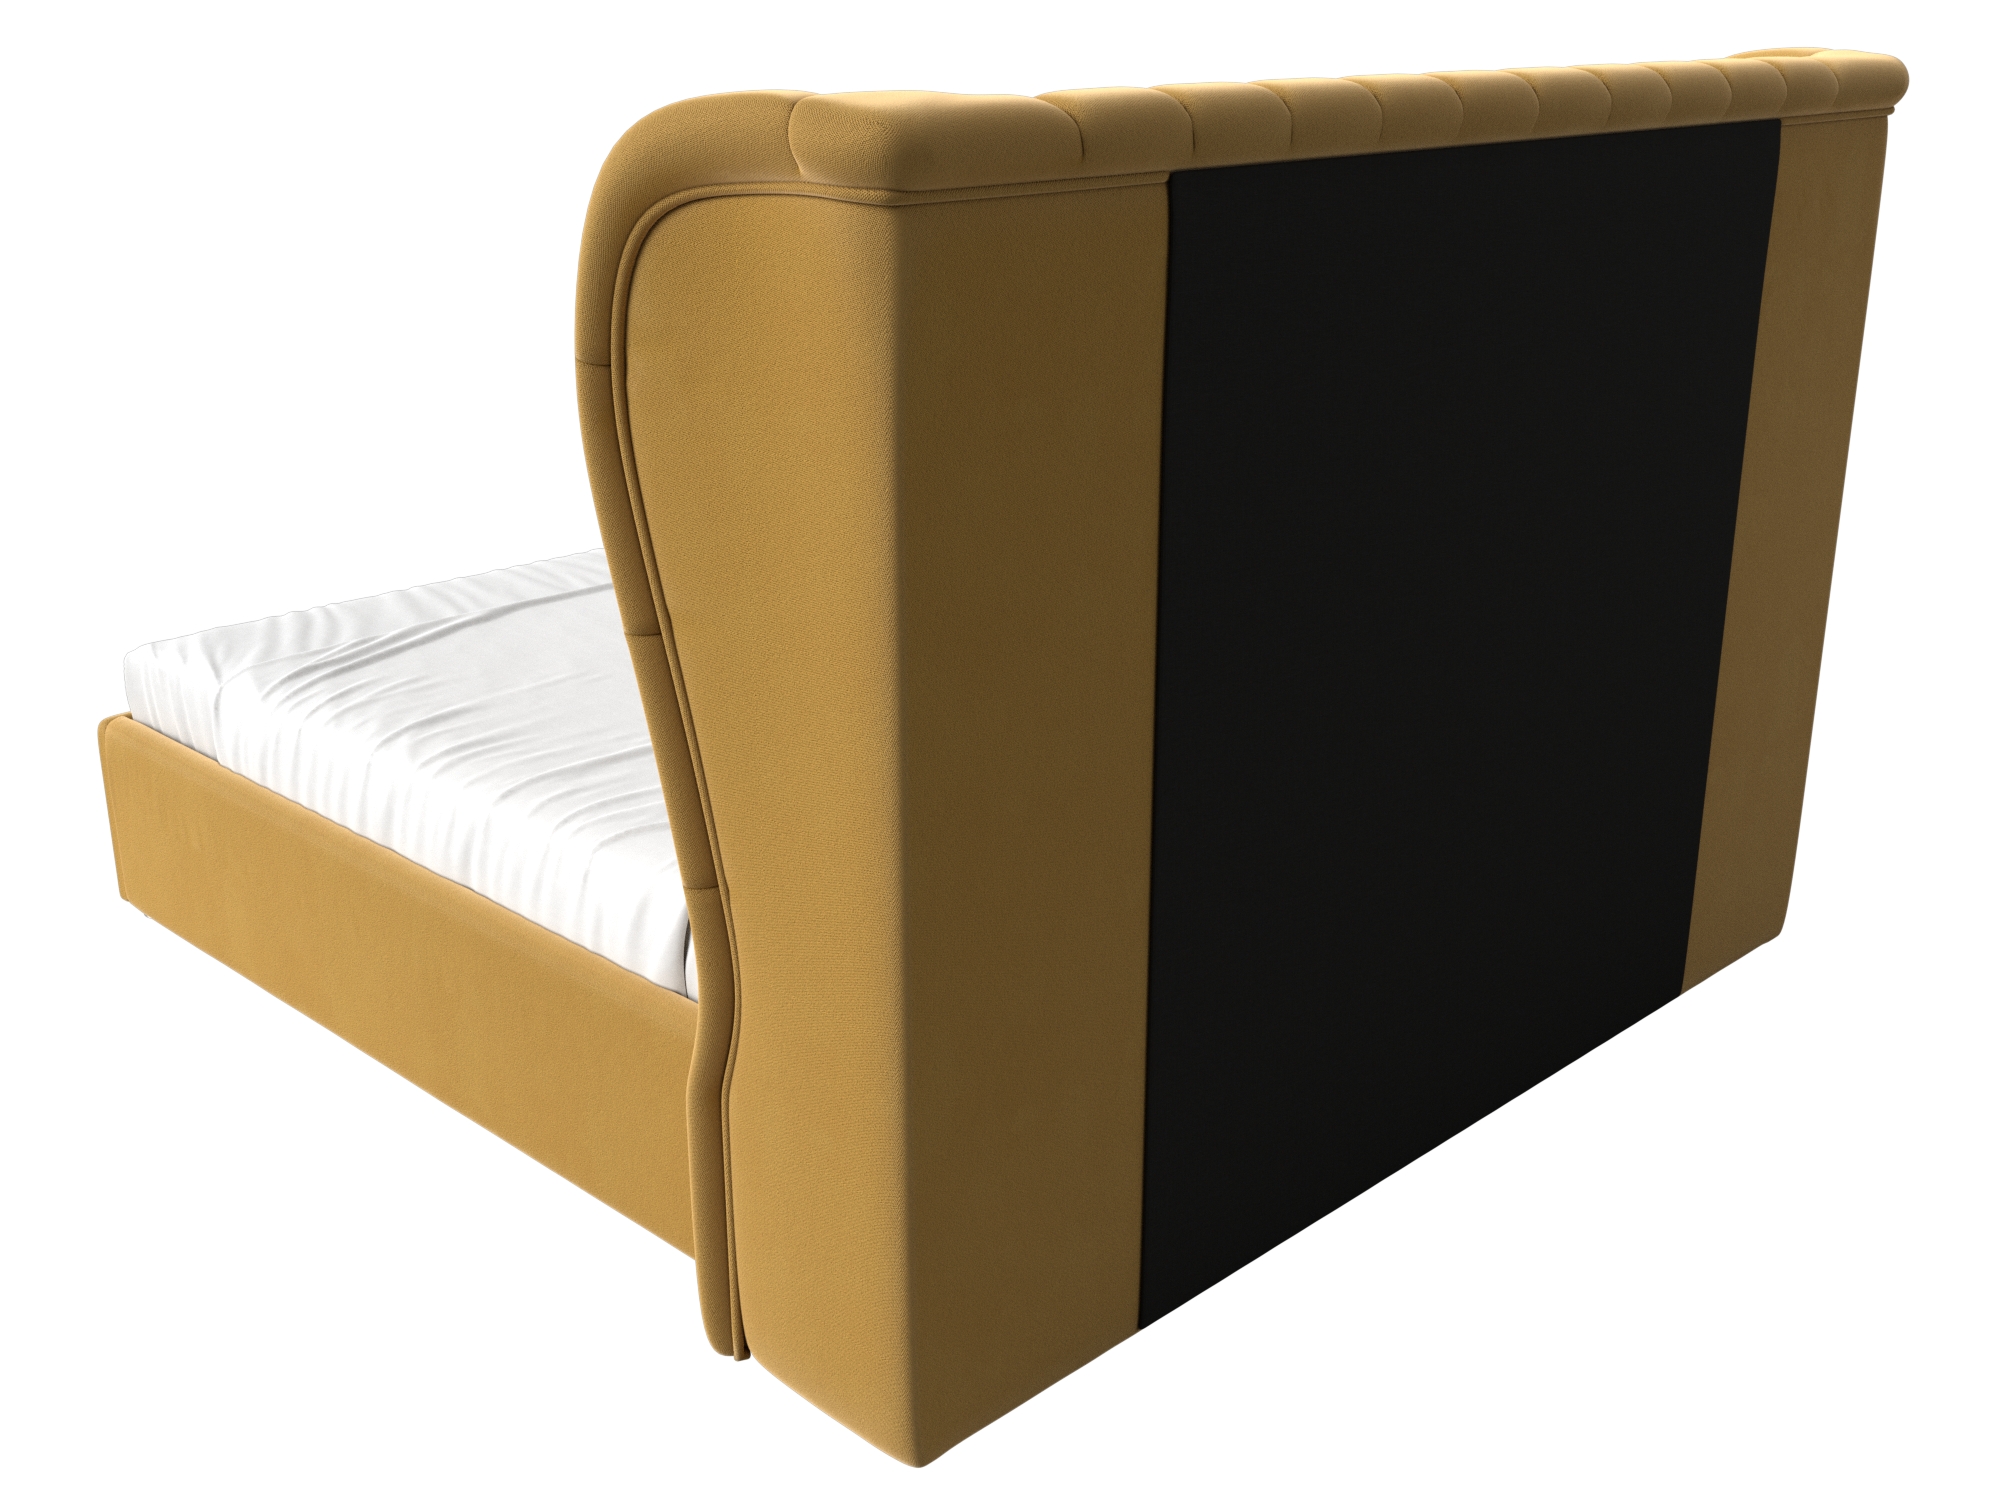 Интерьерная кровать Далия 160 (Желтый)